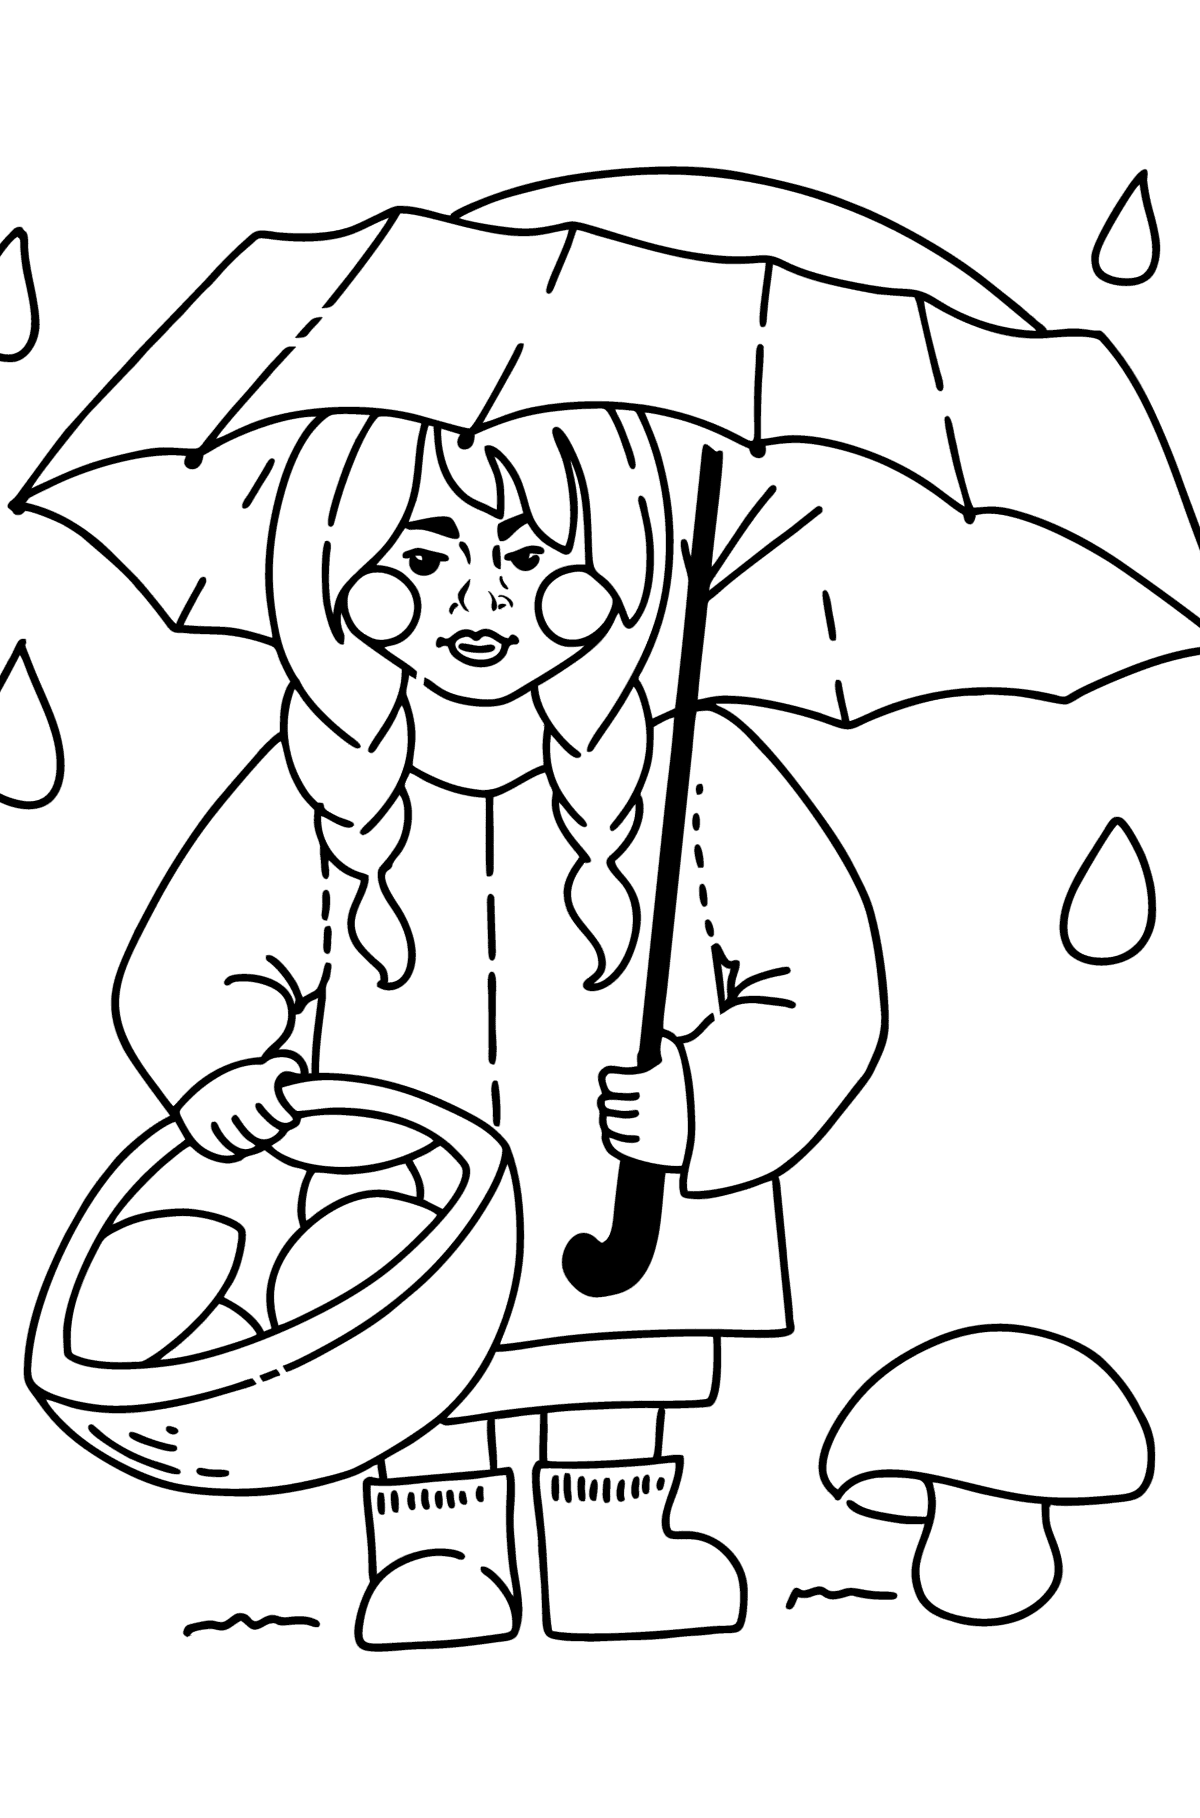 Desenho para colorir - Menina colhendo cogumelos - Imagens para Colorir para Crianças